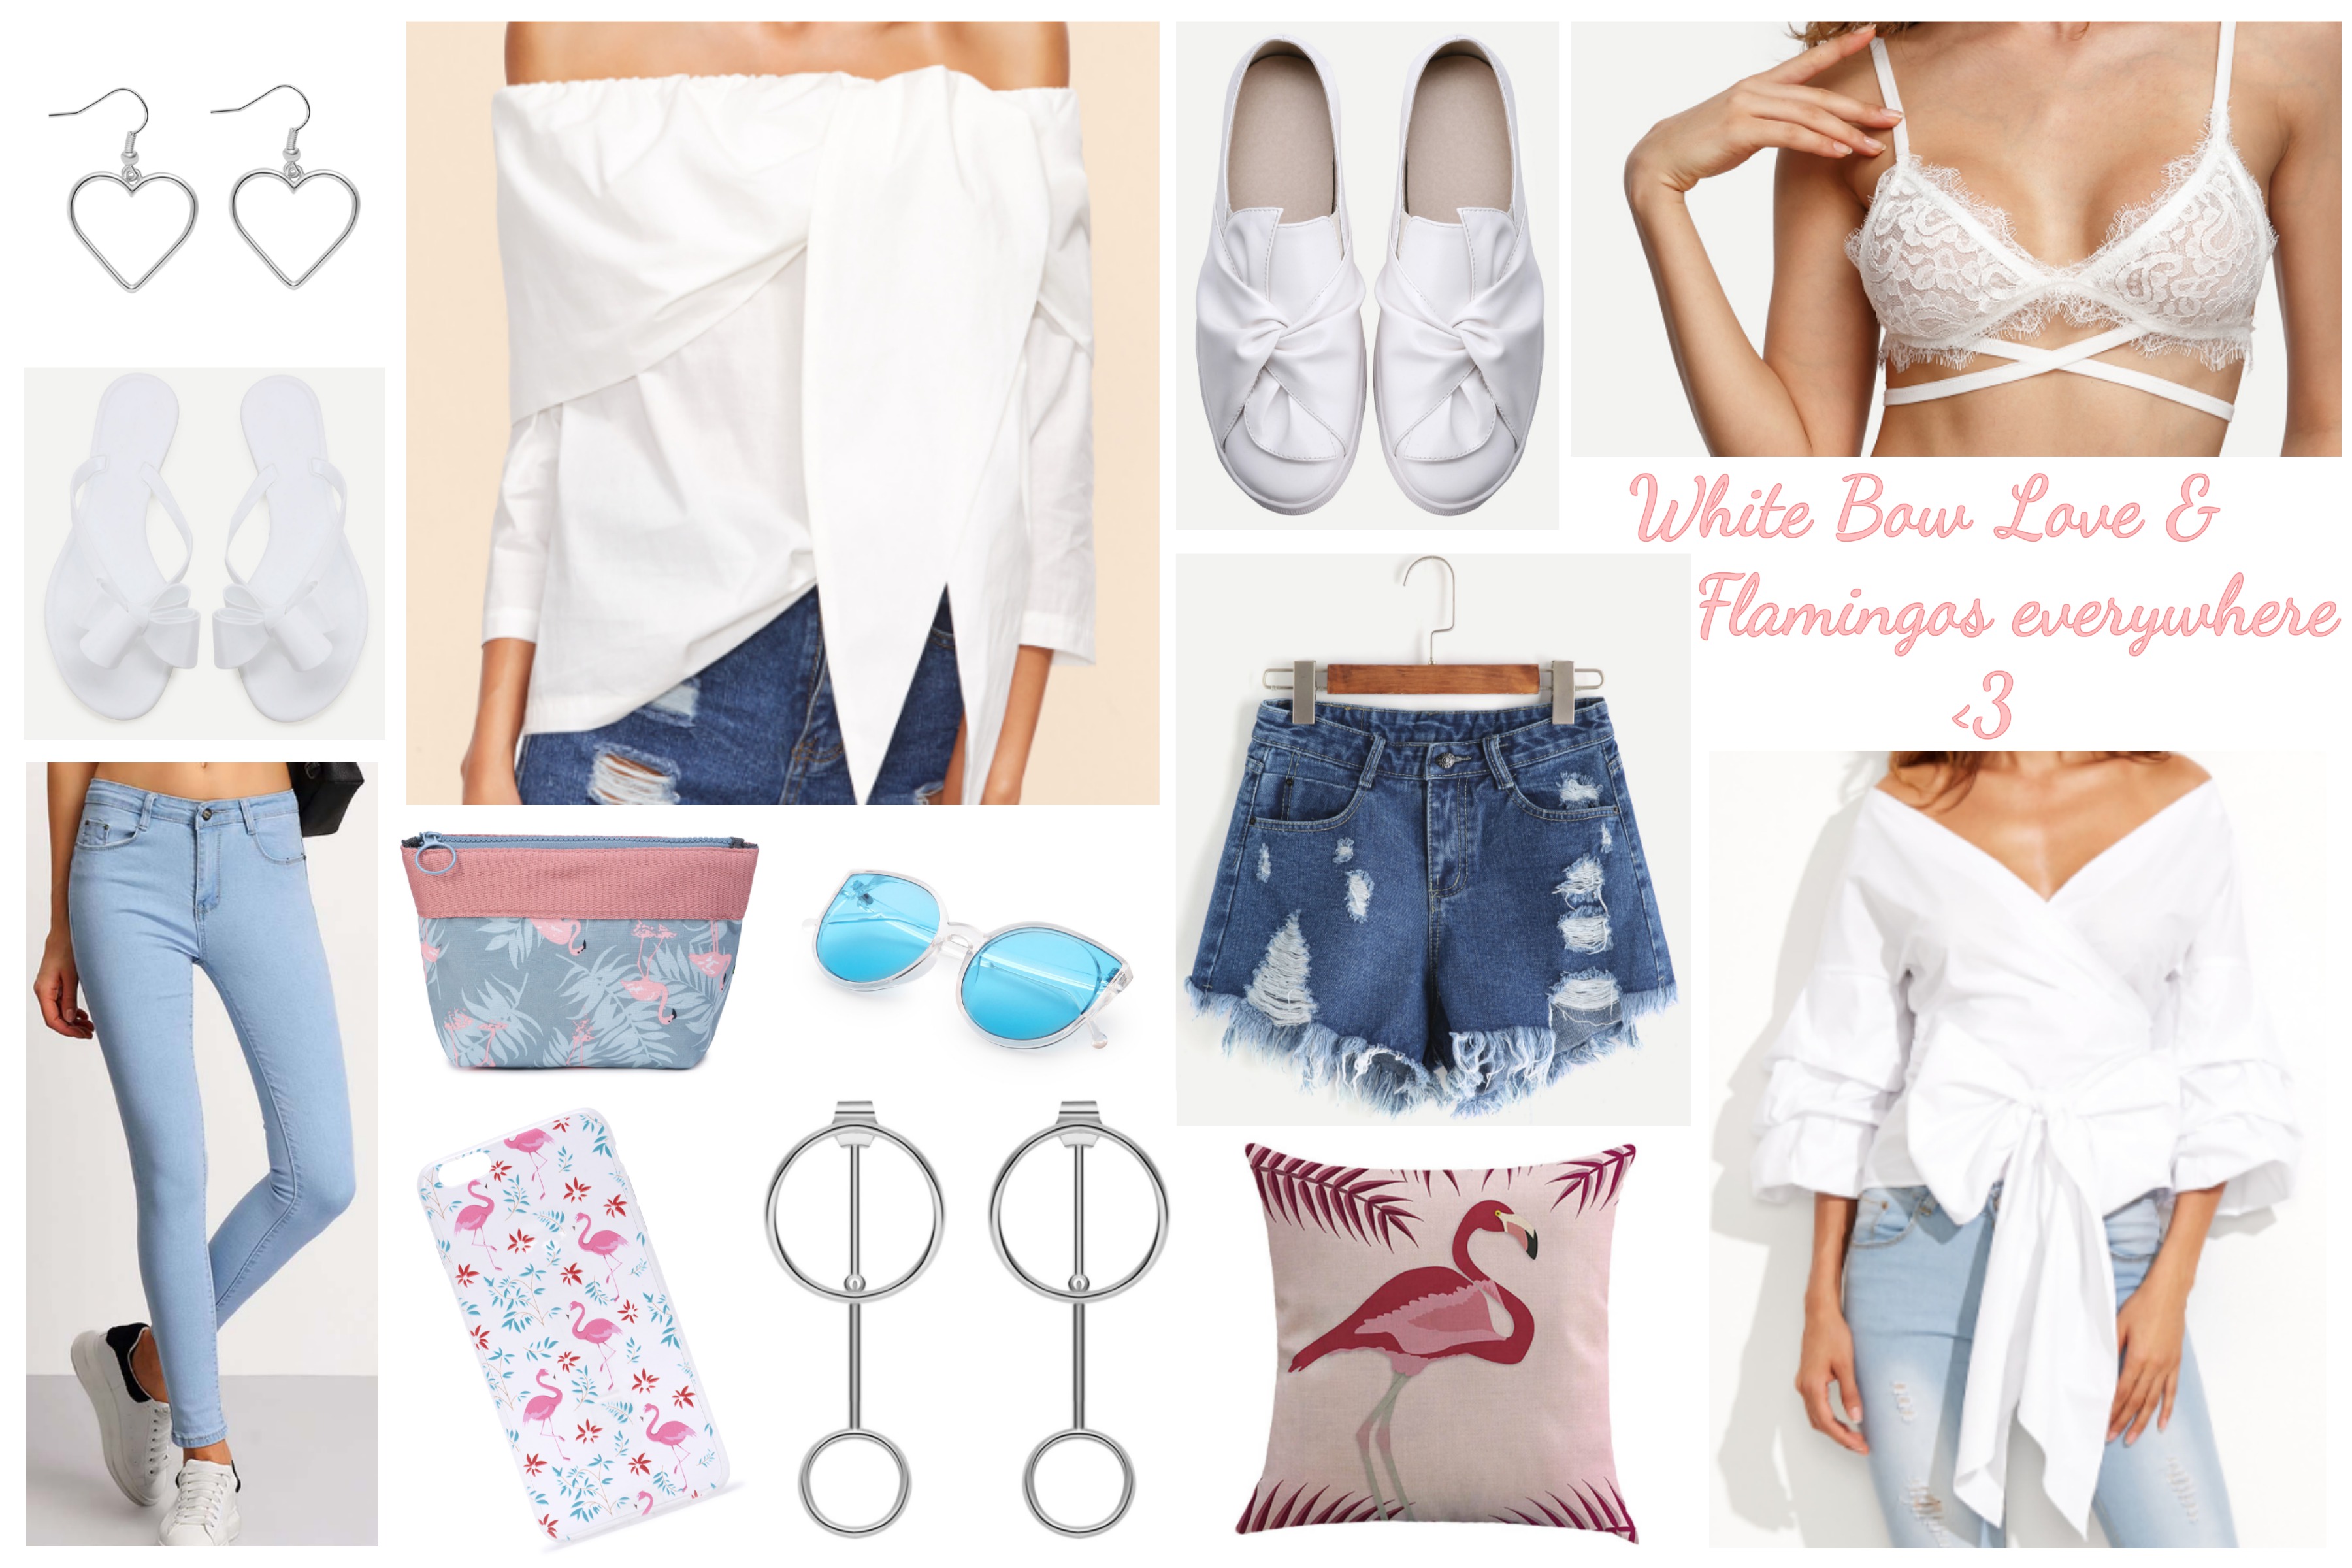 SheIn Wishlist: White Bow Love & Flamingos everywhere